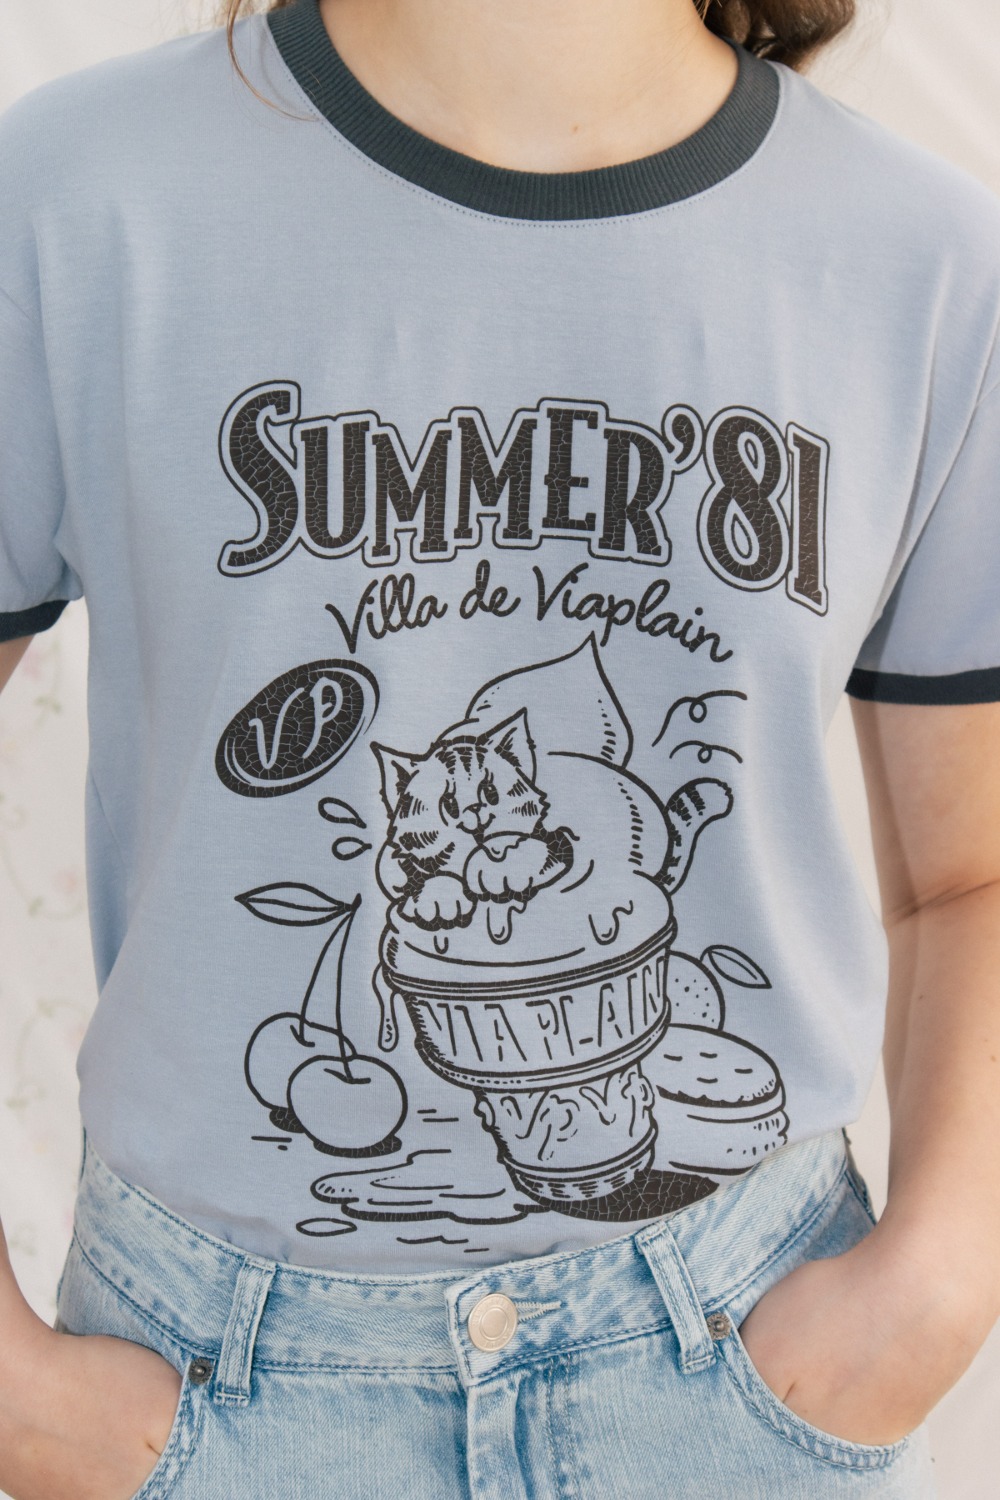 Via Summer&#039;81 T-shirt